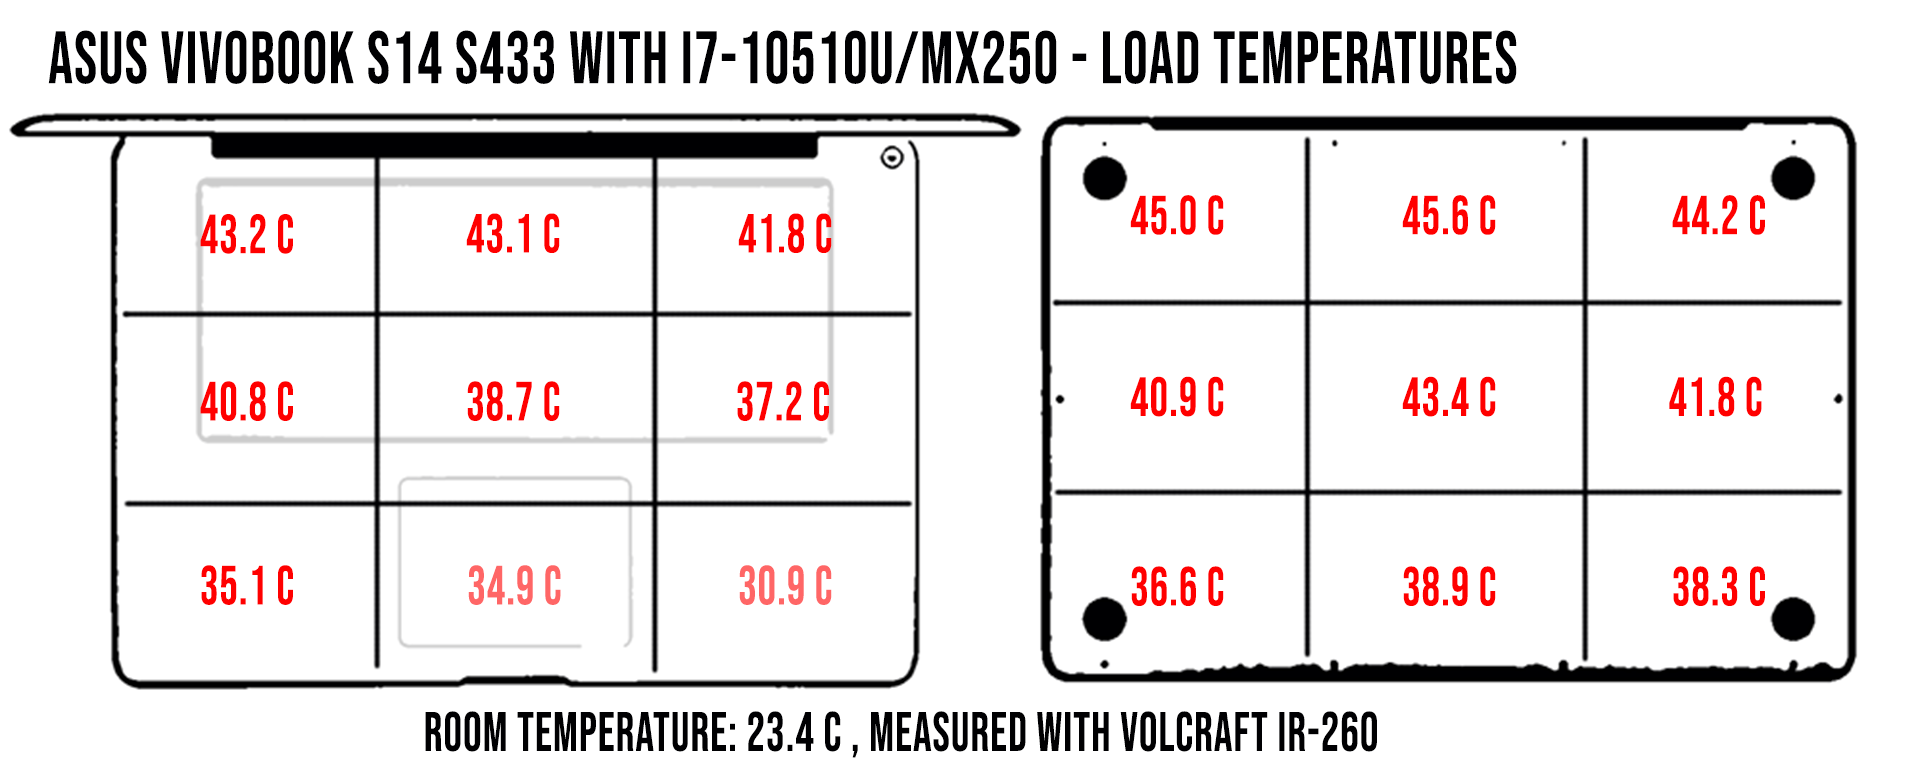 temperatures asus s433 load